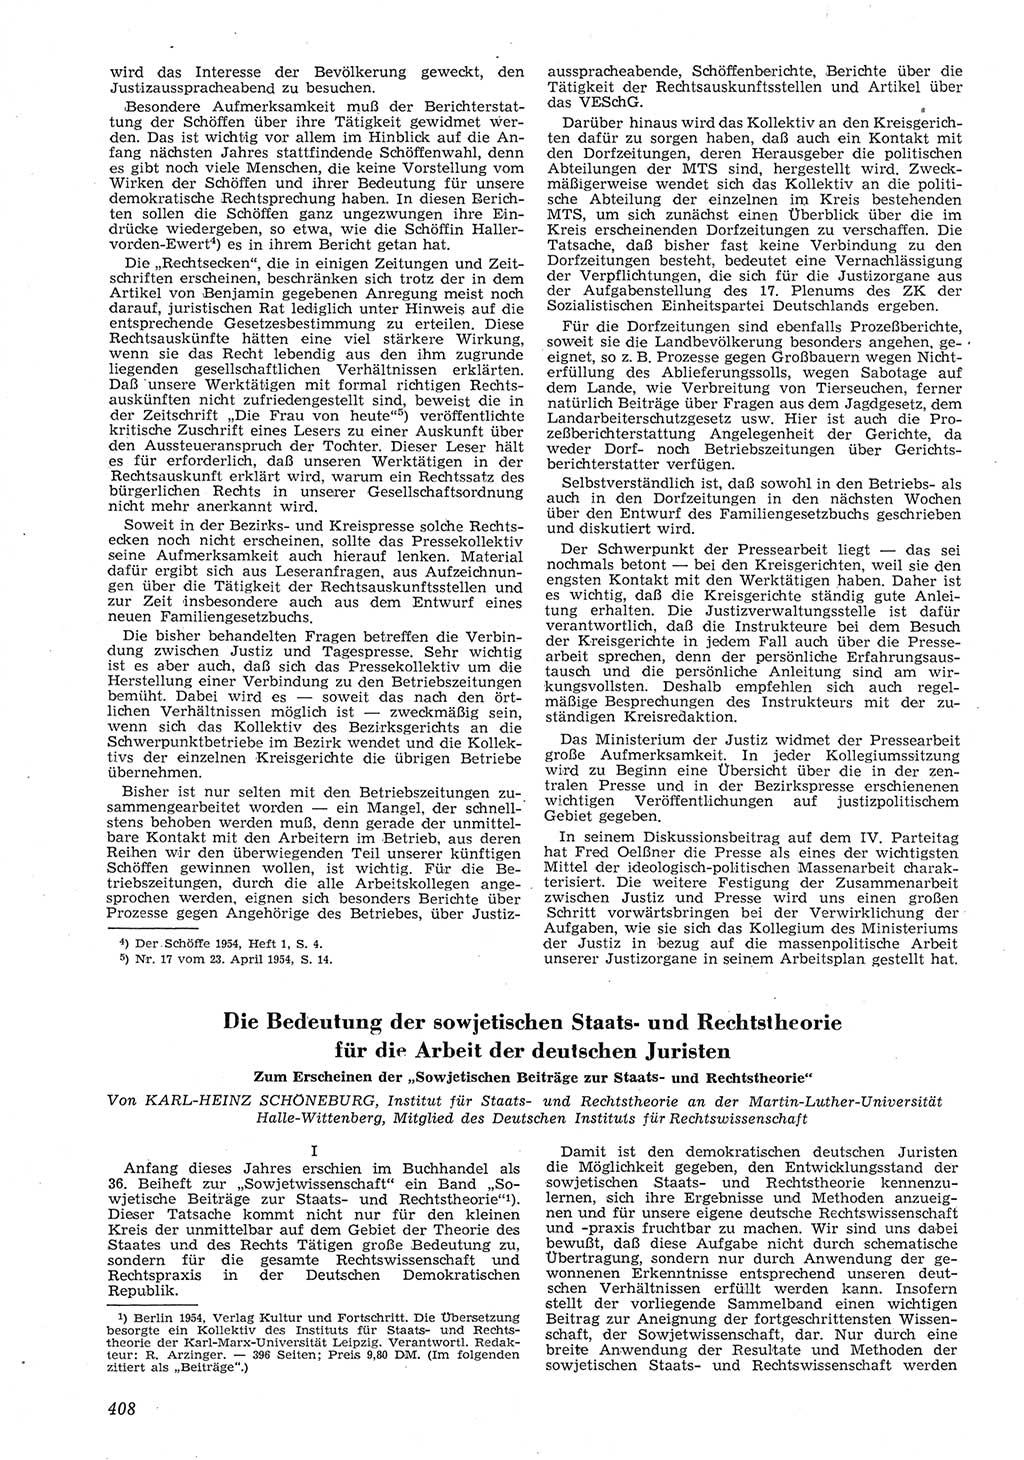 Neue Justiz (NJ), Zeitschrift für Recht und Rechtswissenschaft [Deutsche Demokratische Republik (DDR)], 8. Jahrgang 1954, Seite 408 (NJ DDR 1954, S. 408)